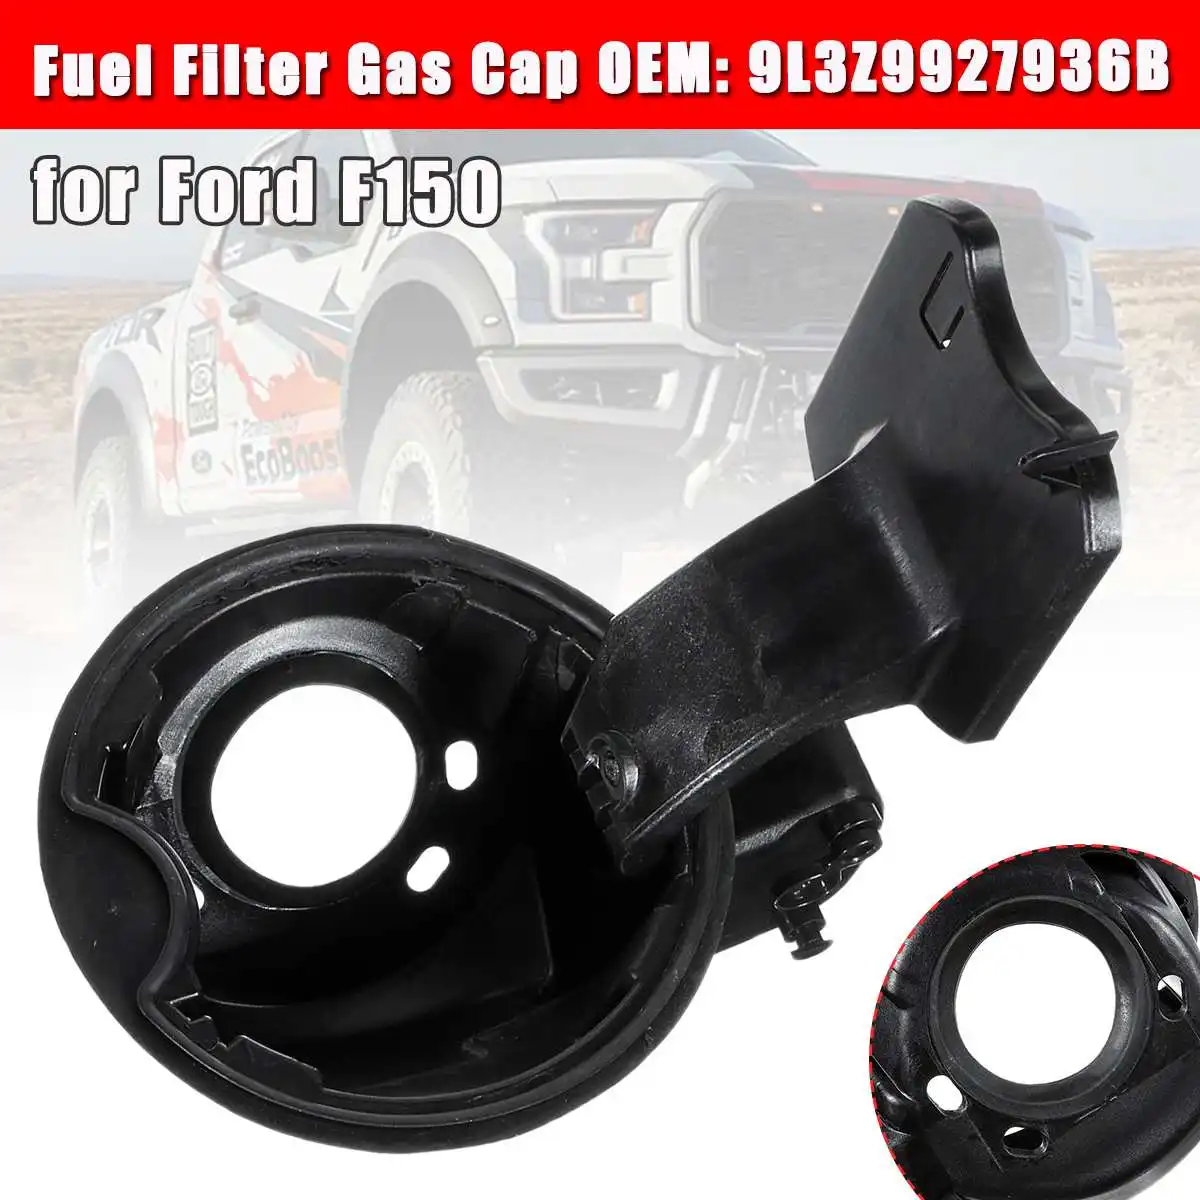 

Car Fuel Filler Gas Cover Cap For Ford F150 9L3Z9927936B Fuel Filler Housing Hinge Pocket Gas Cap Door Lid Car Accessories